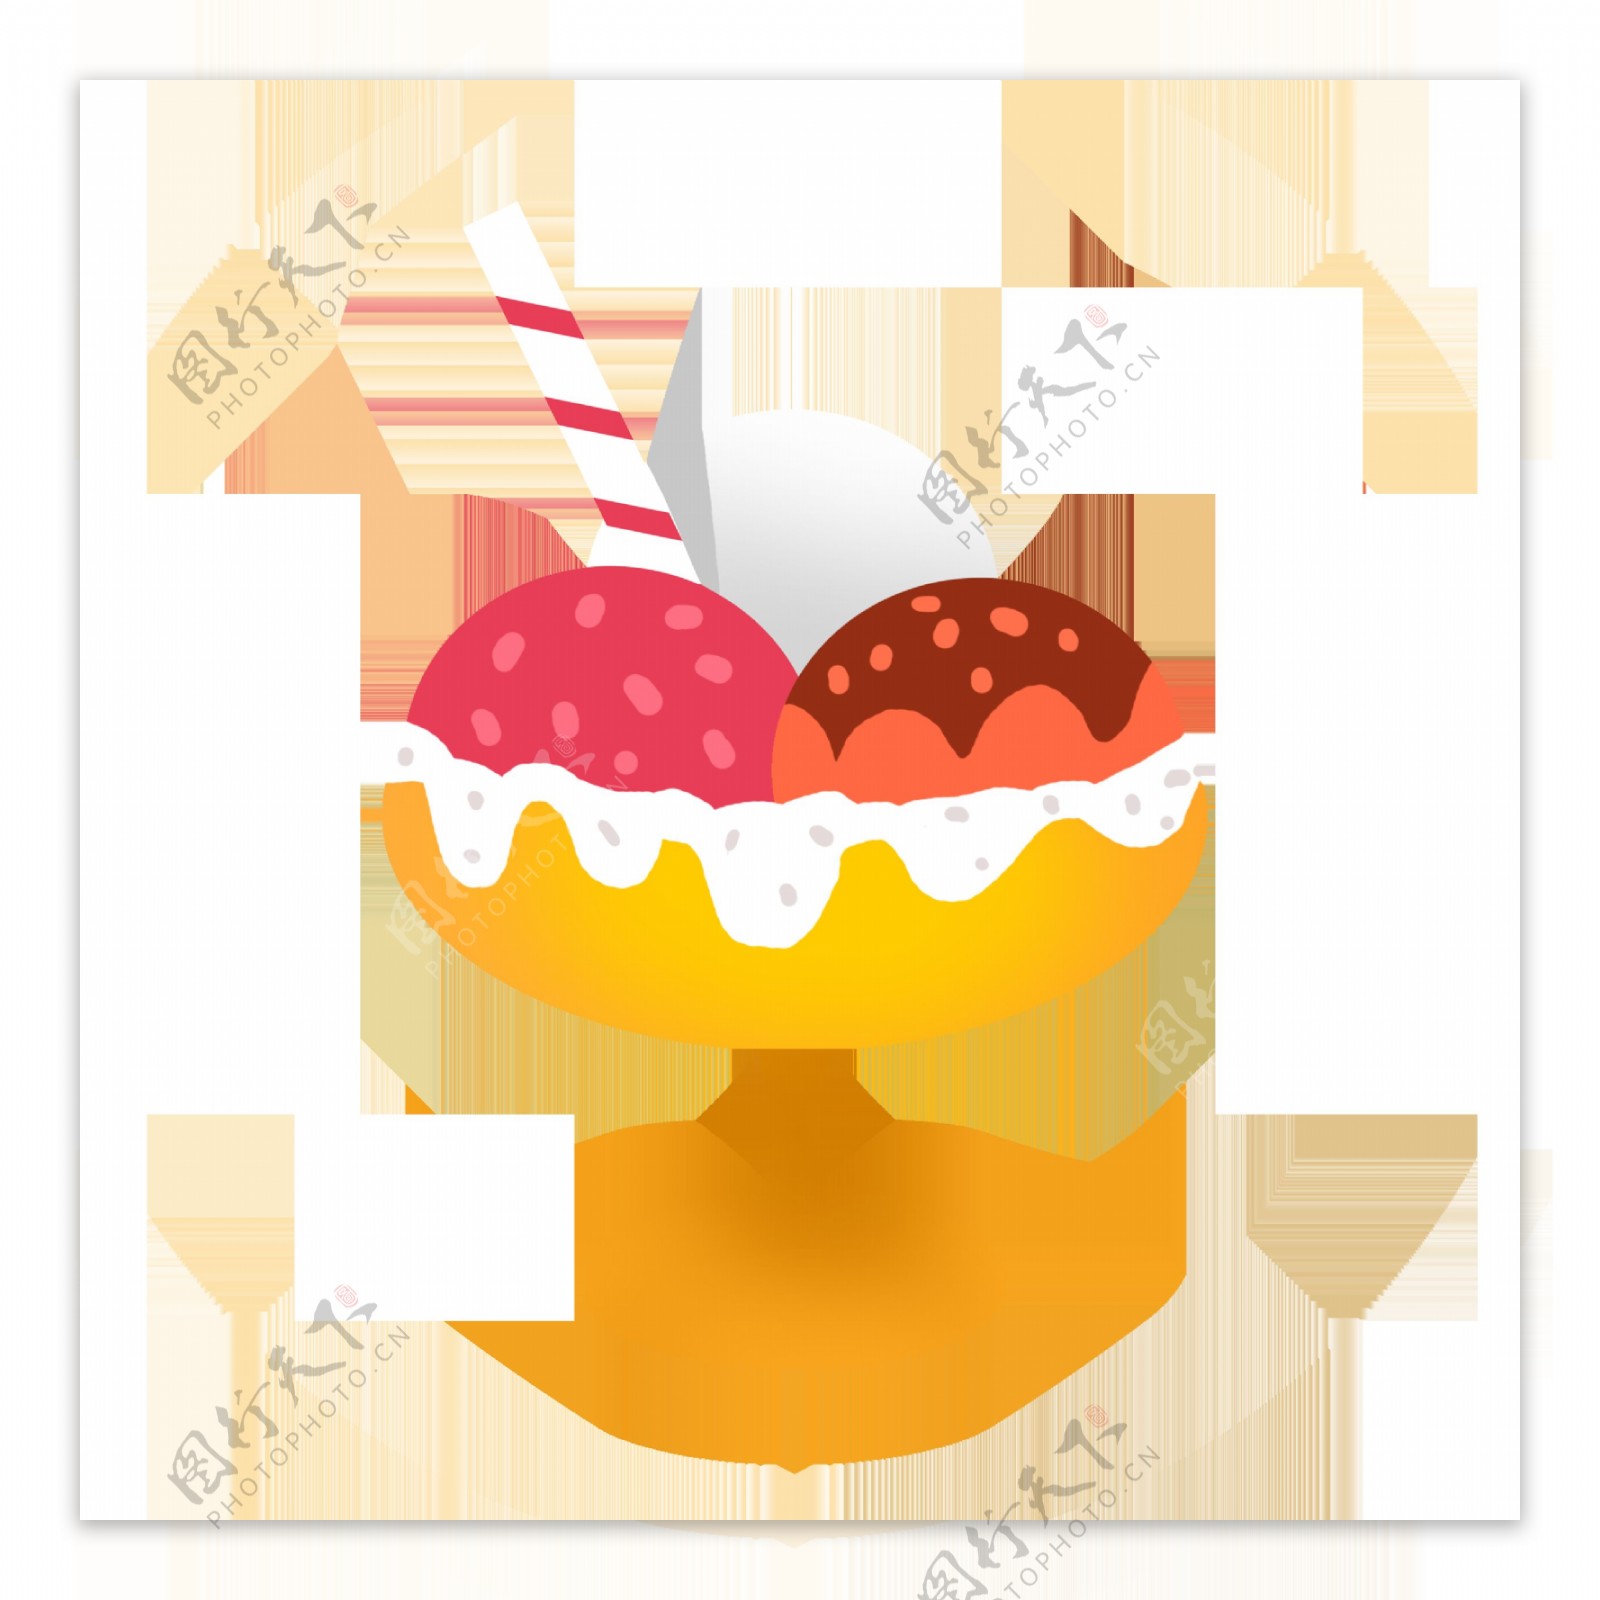 夏日清凉手绘甜品蛋糕冰淇淋插画